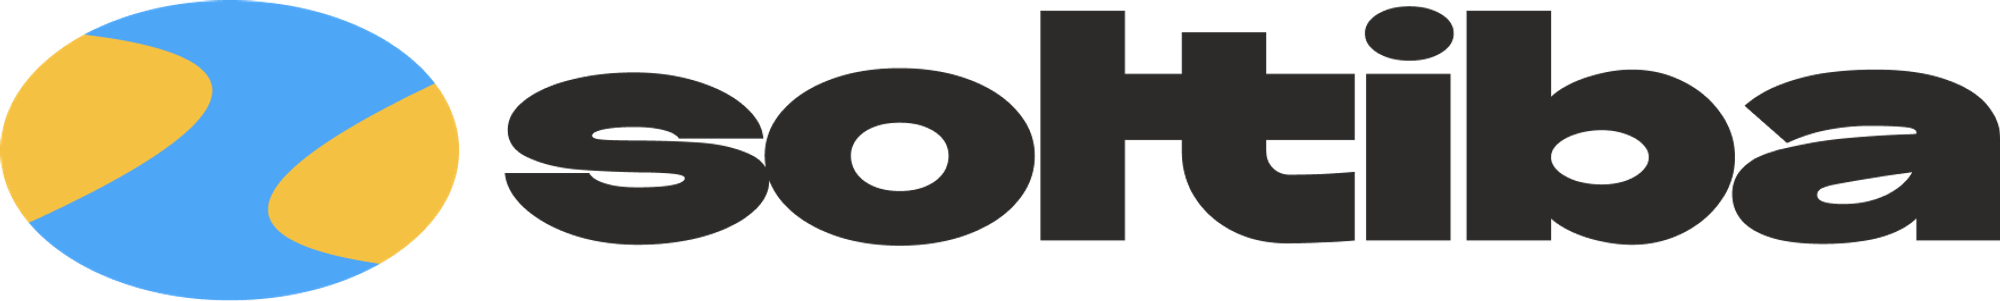 Modern logo design for soltiba.com